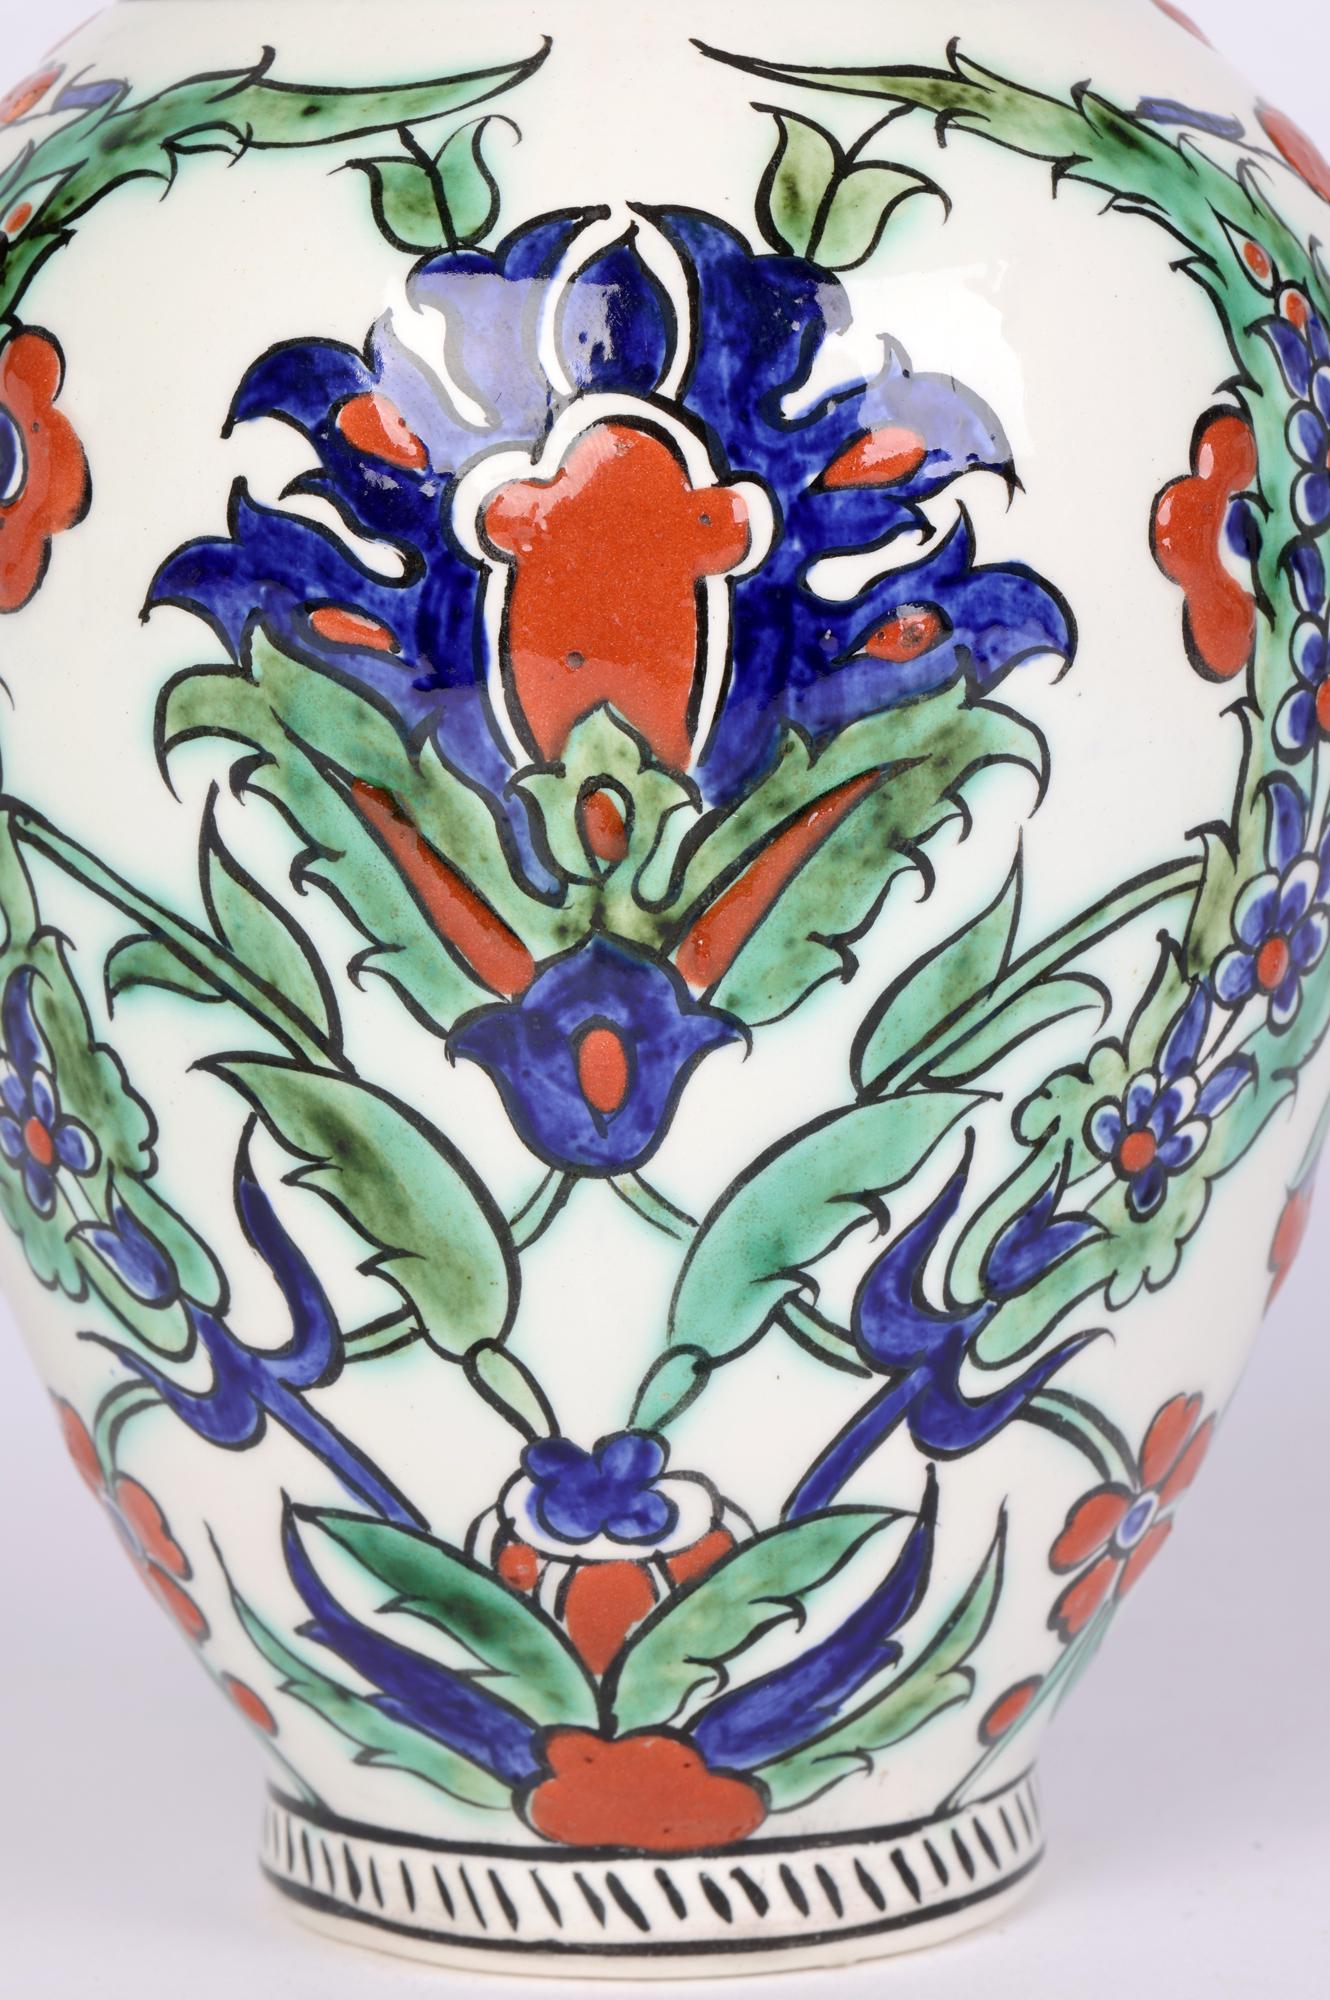 Superbe vase en poterie d'art belge peint à la main, décoré de motifs floraux de style islamique, attribué à Charles Catteau et datant d'environ 1920. Le vase, de forme bulbeuse arrondie, repose sur un pied rond étroit avec un sommet étroit en forme